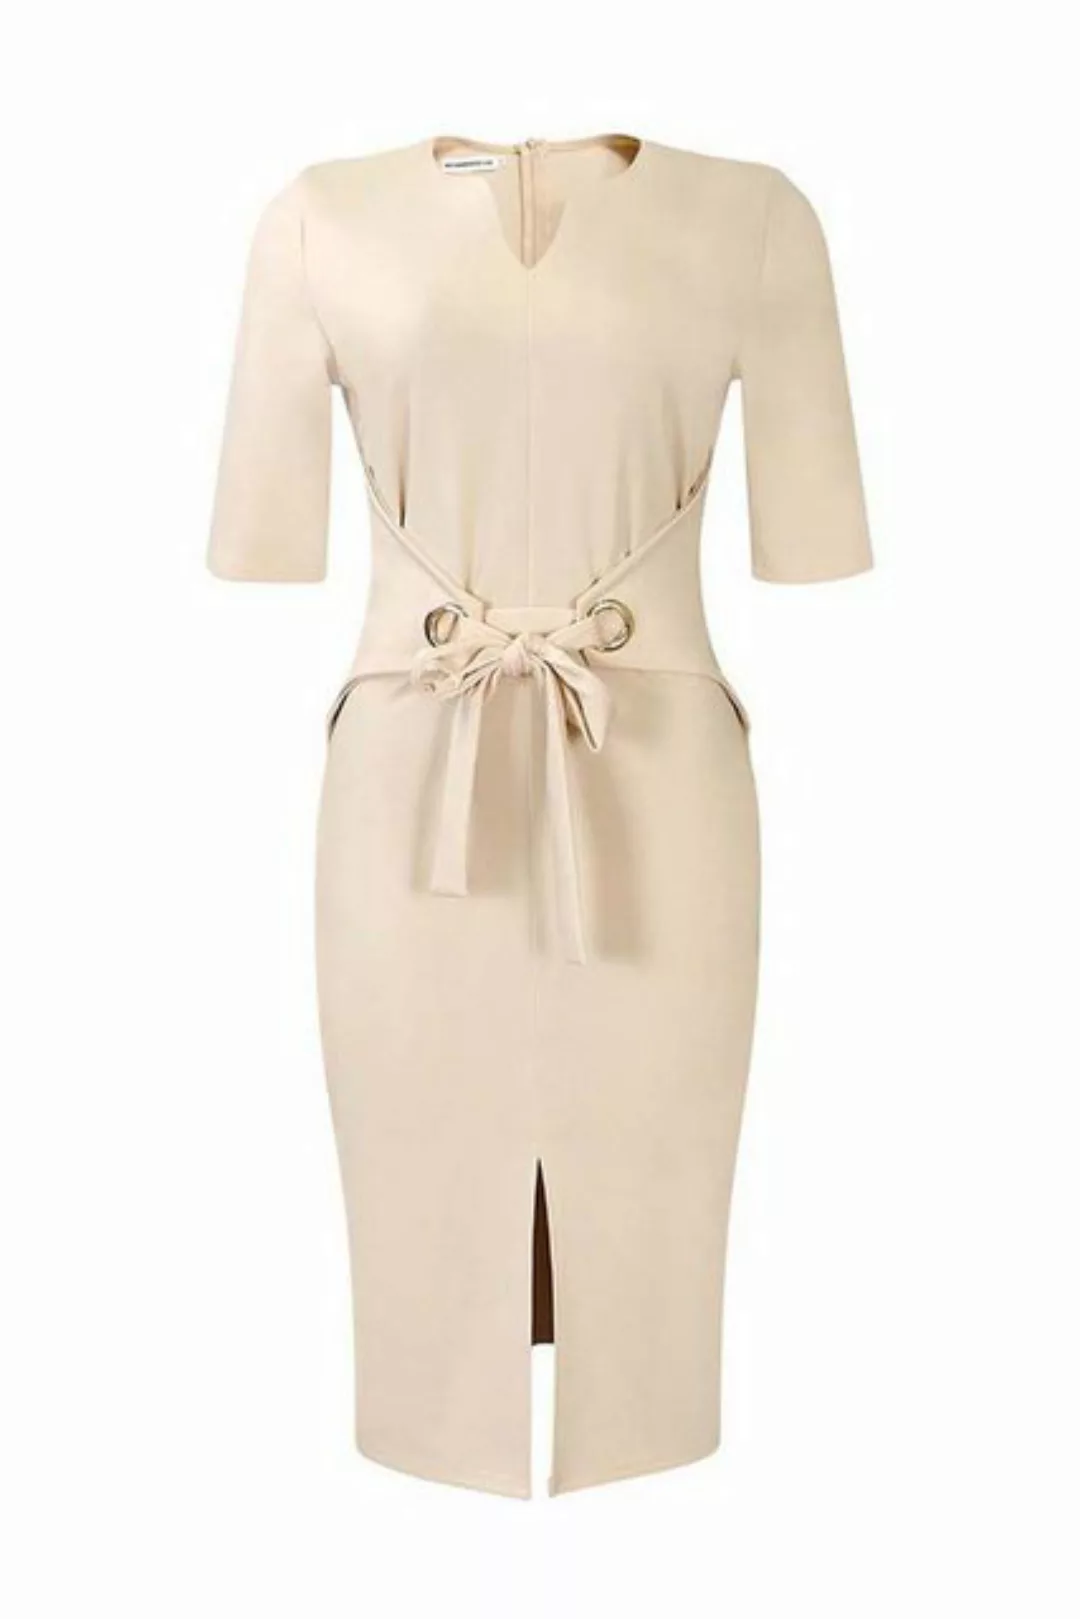 ZWY Dirndl Damenkleid V-Ausschnitt einfarbig schmale Passform Damenrock Ele günstig online kaufen